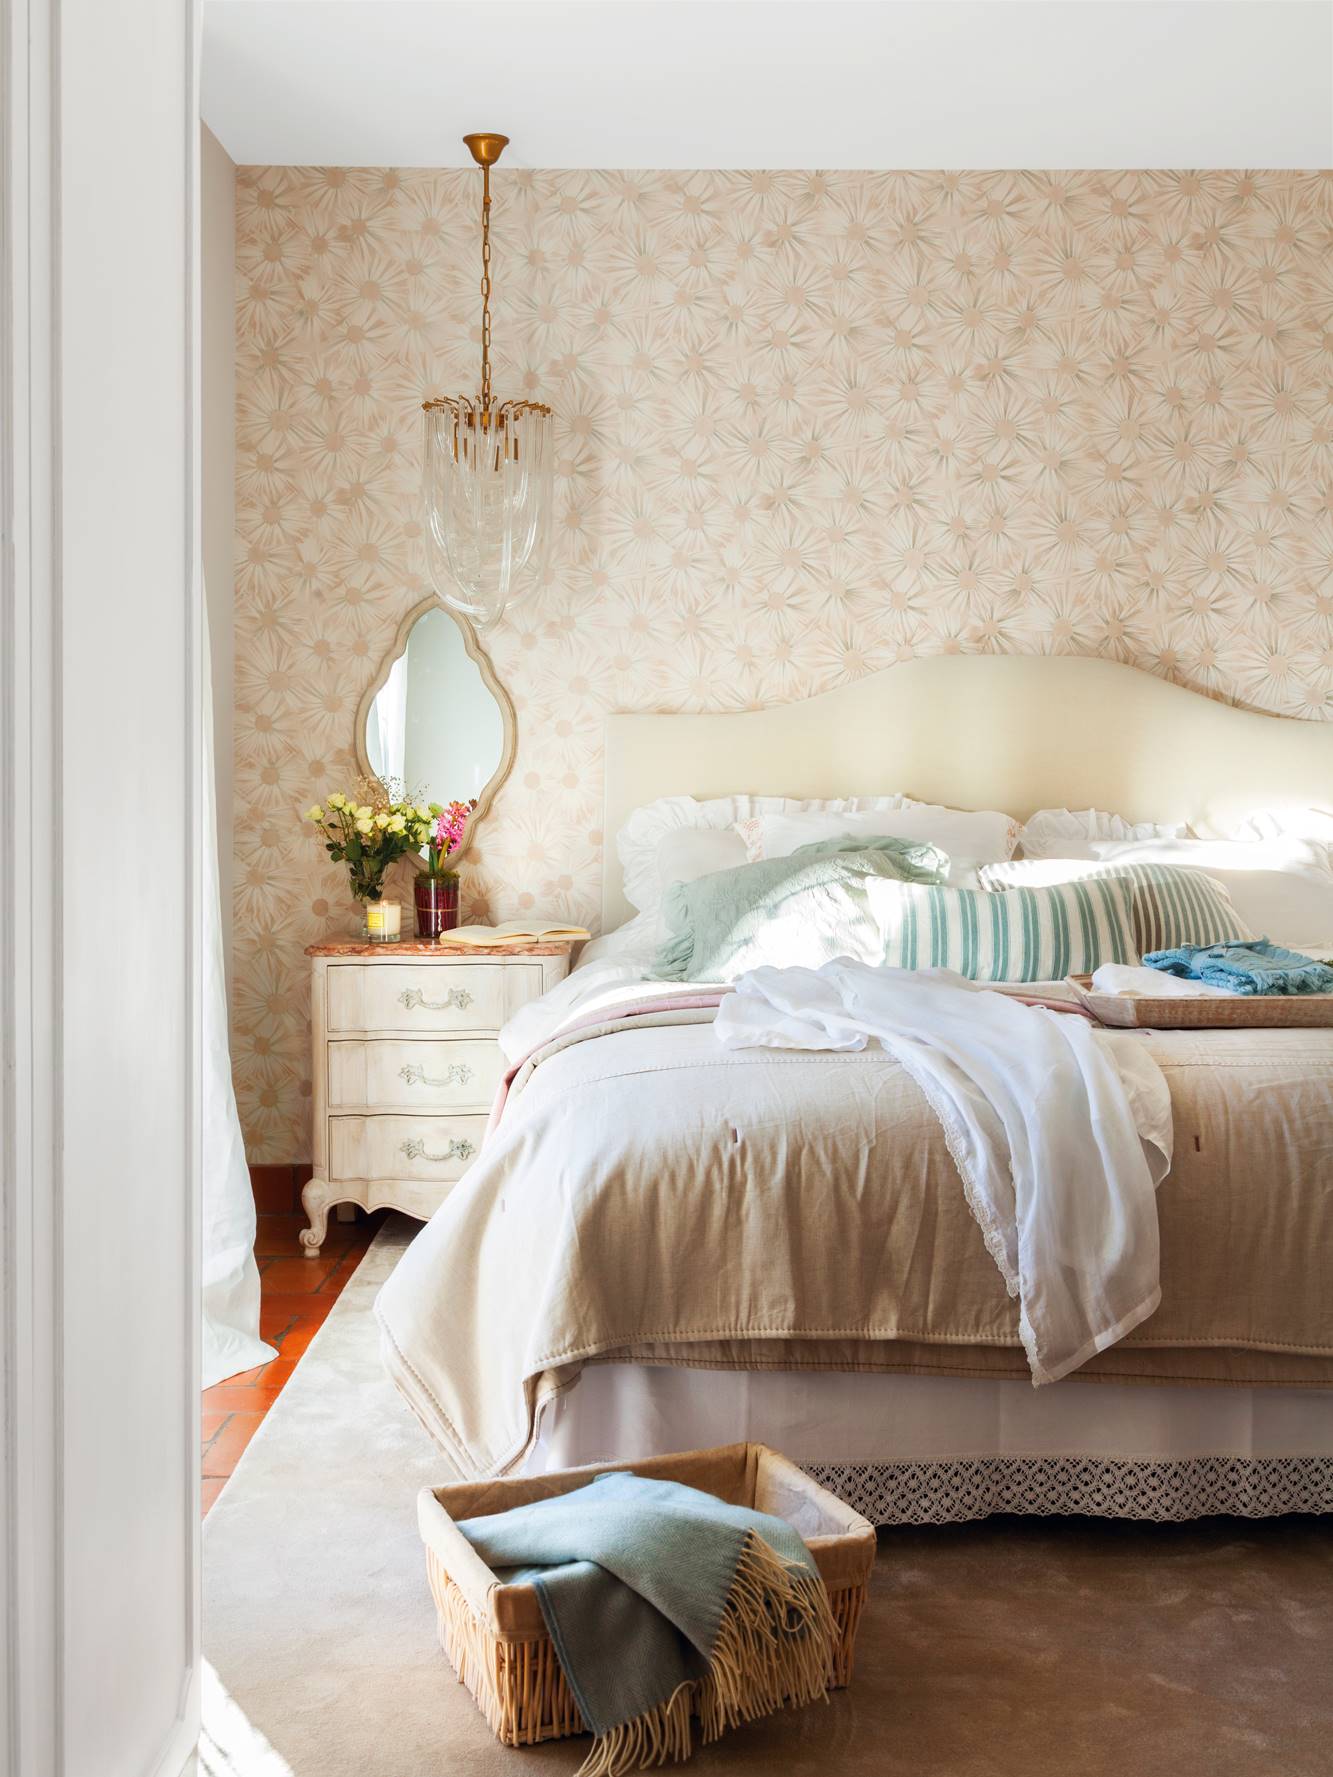 Dormitorio con papel pintado de flores en el cabecero. 